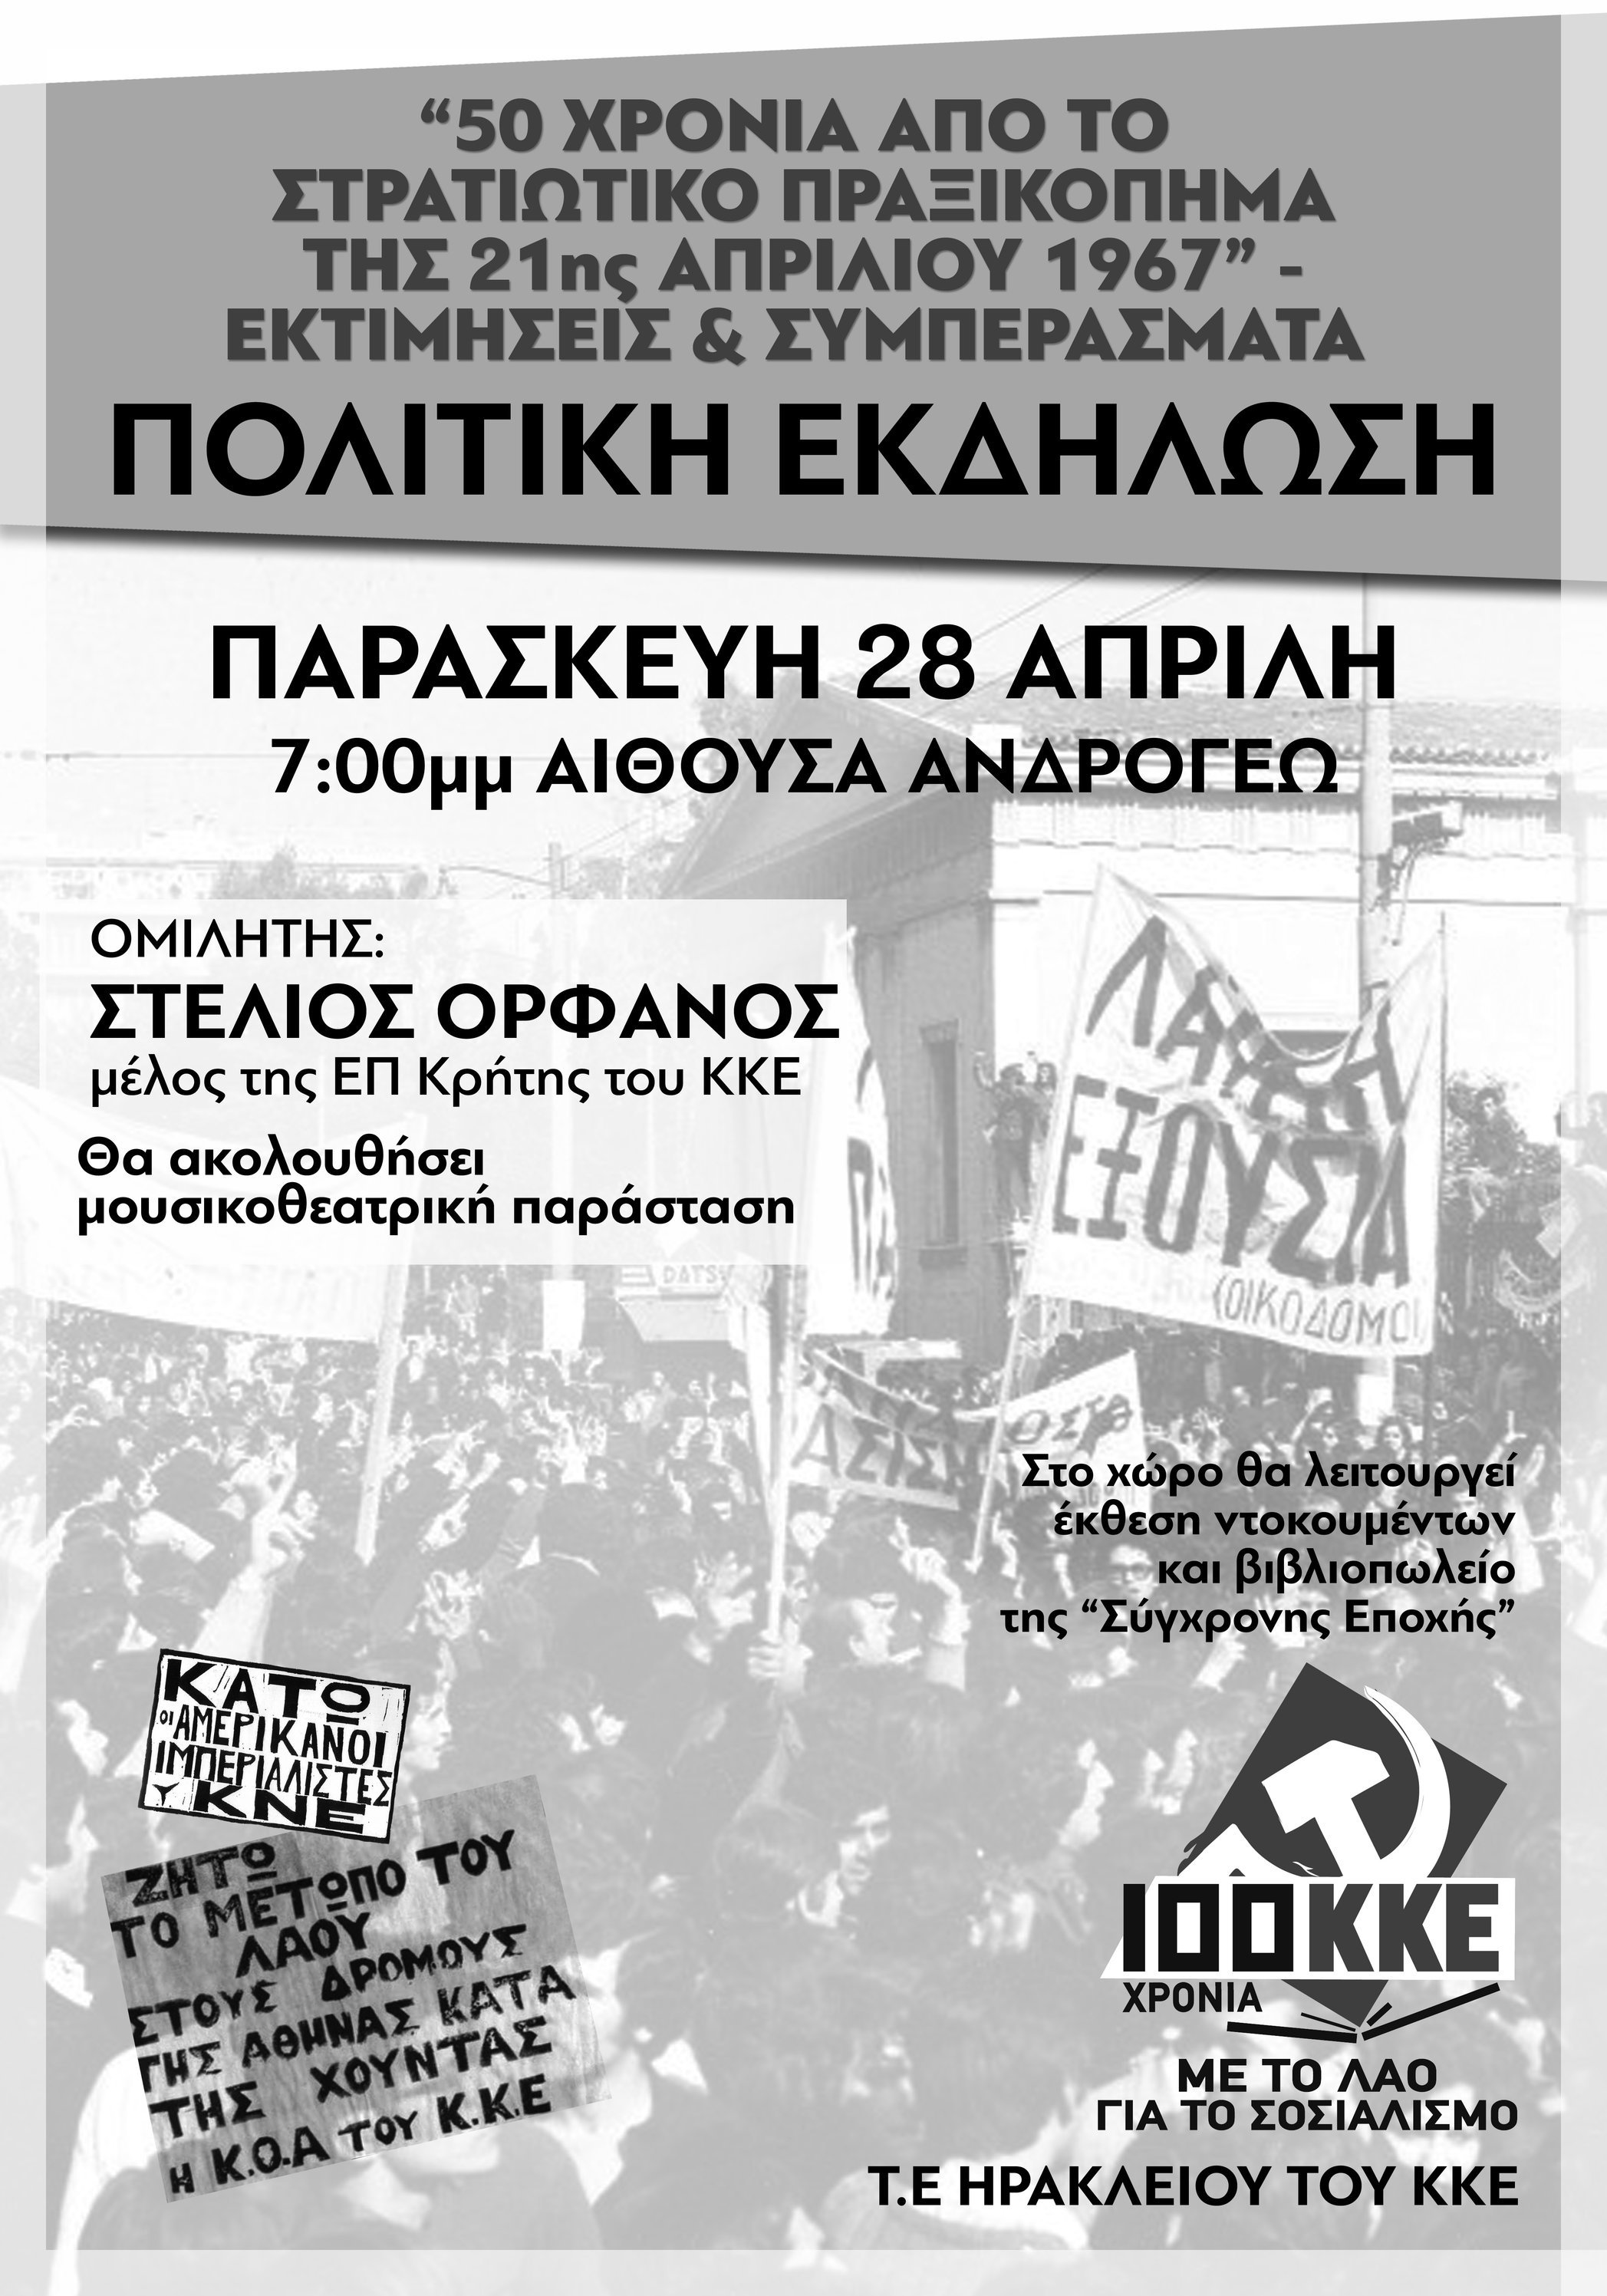 Πολιτική εκδήλωση της ΤΕ Ηρακλείου του ΚΚΕ για τα 50 χρόνια από το στρατιωτικό πραξικόπημα της 21ης Απριλίου 1967  